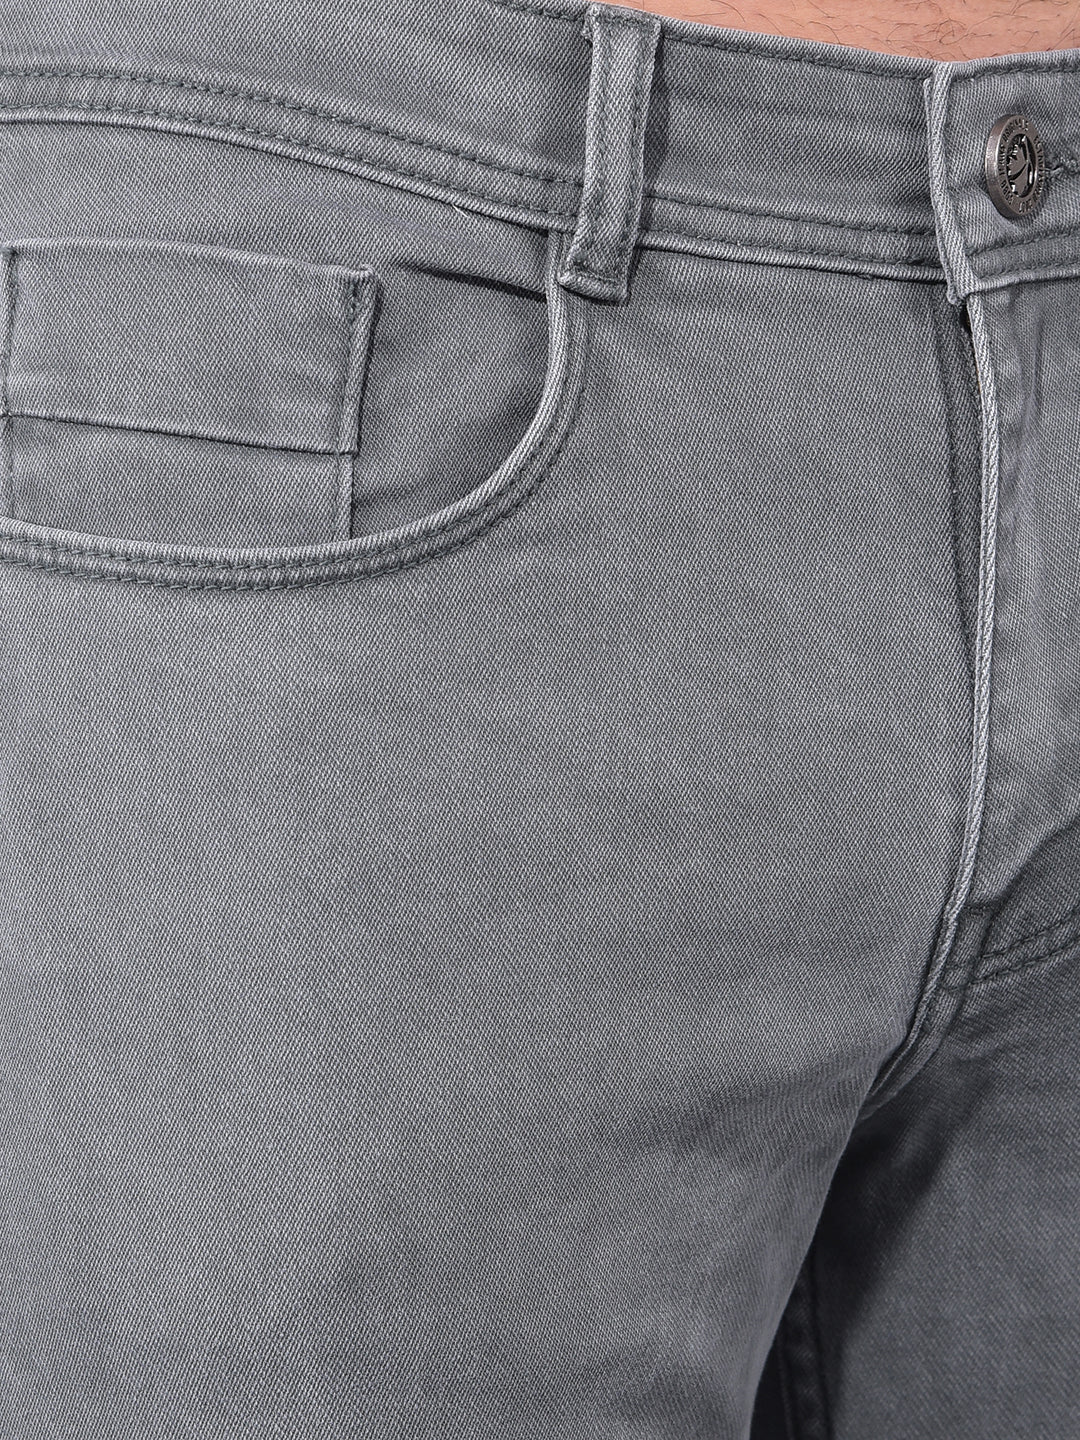 cobb cabbage pont narrow fit premium jeans